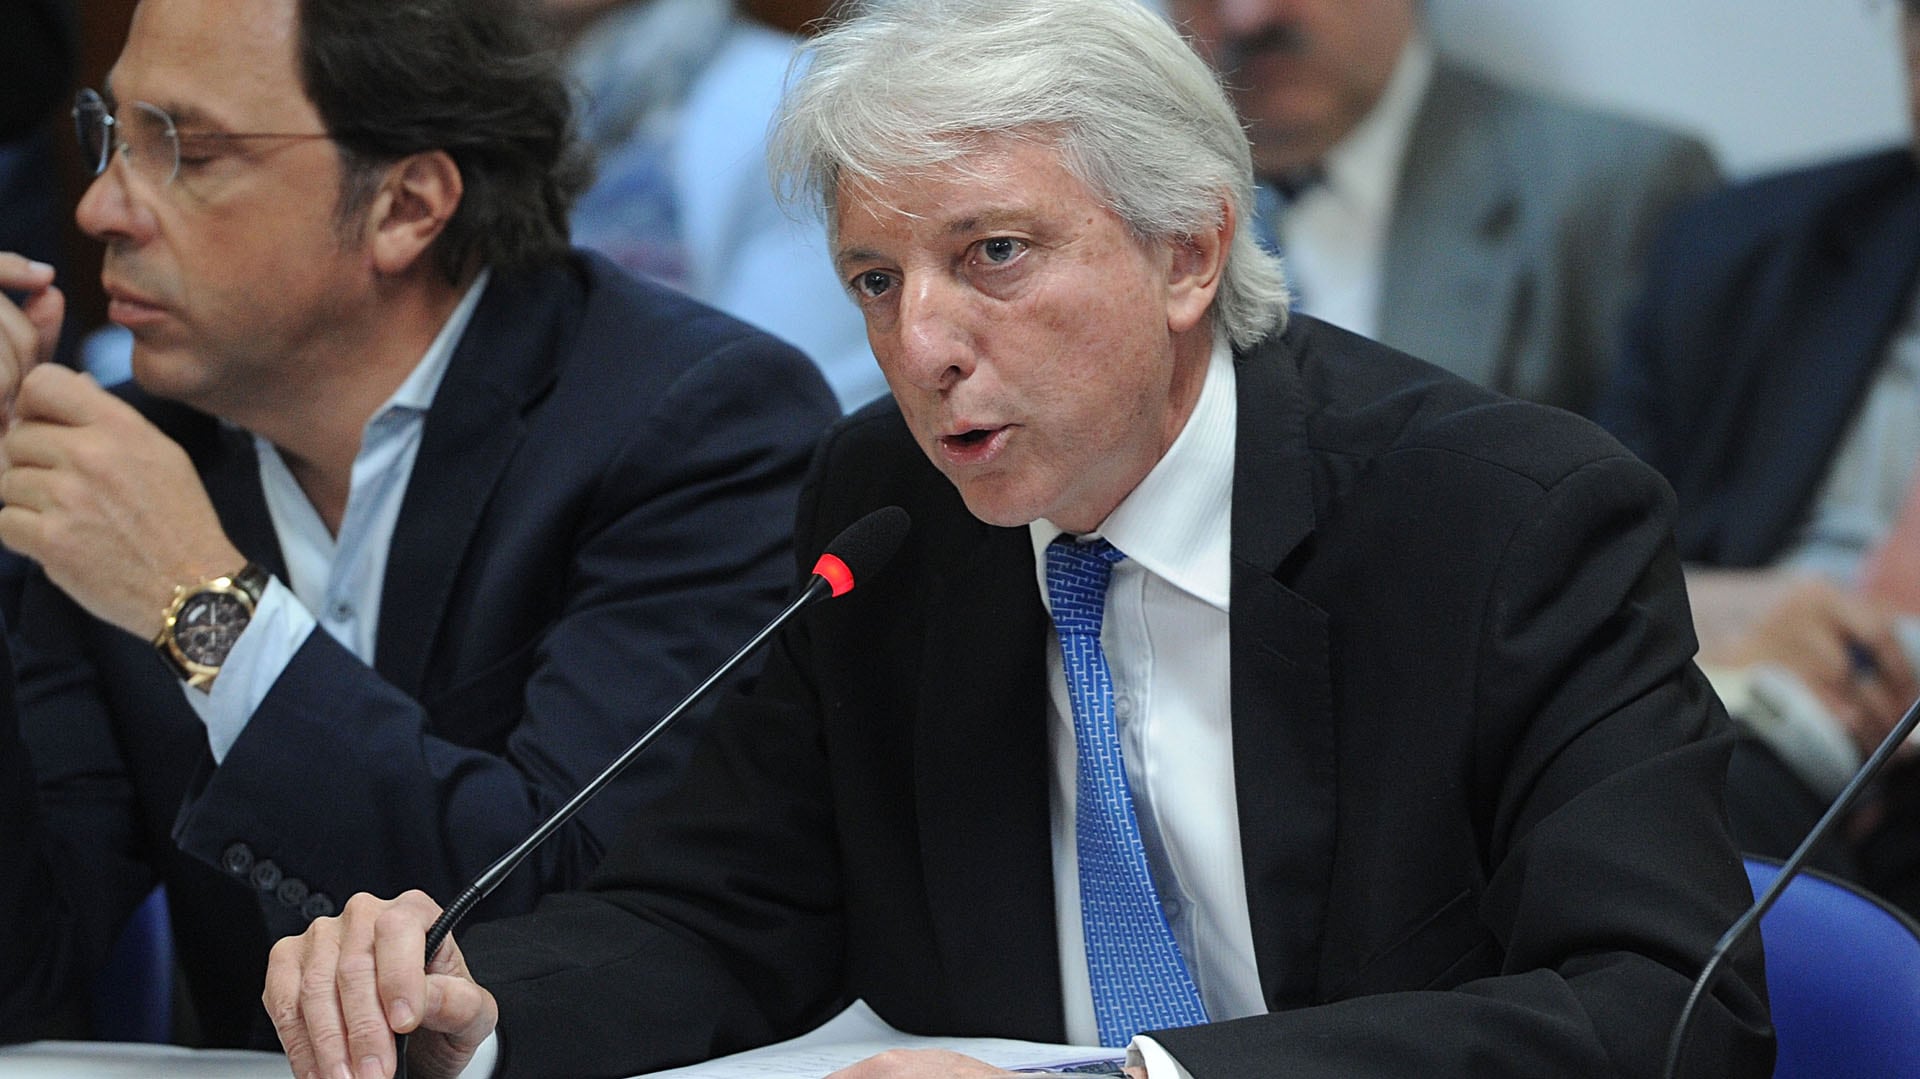 El representante argentino aseguró que “el Gobierno garantiza totalmente las reuniones pacíficas y la libertad de expresión" (Télam)